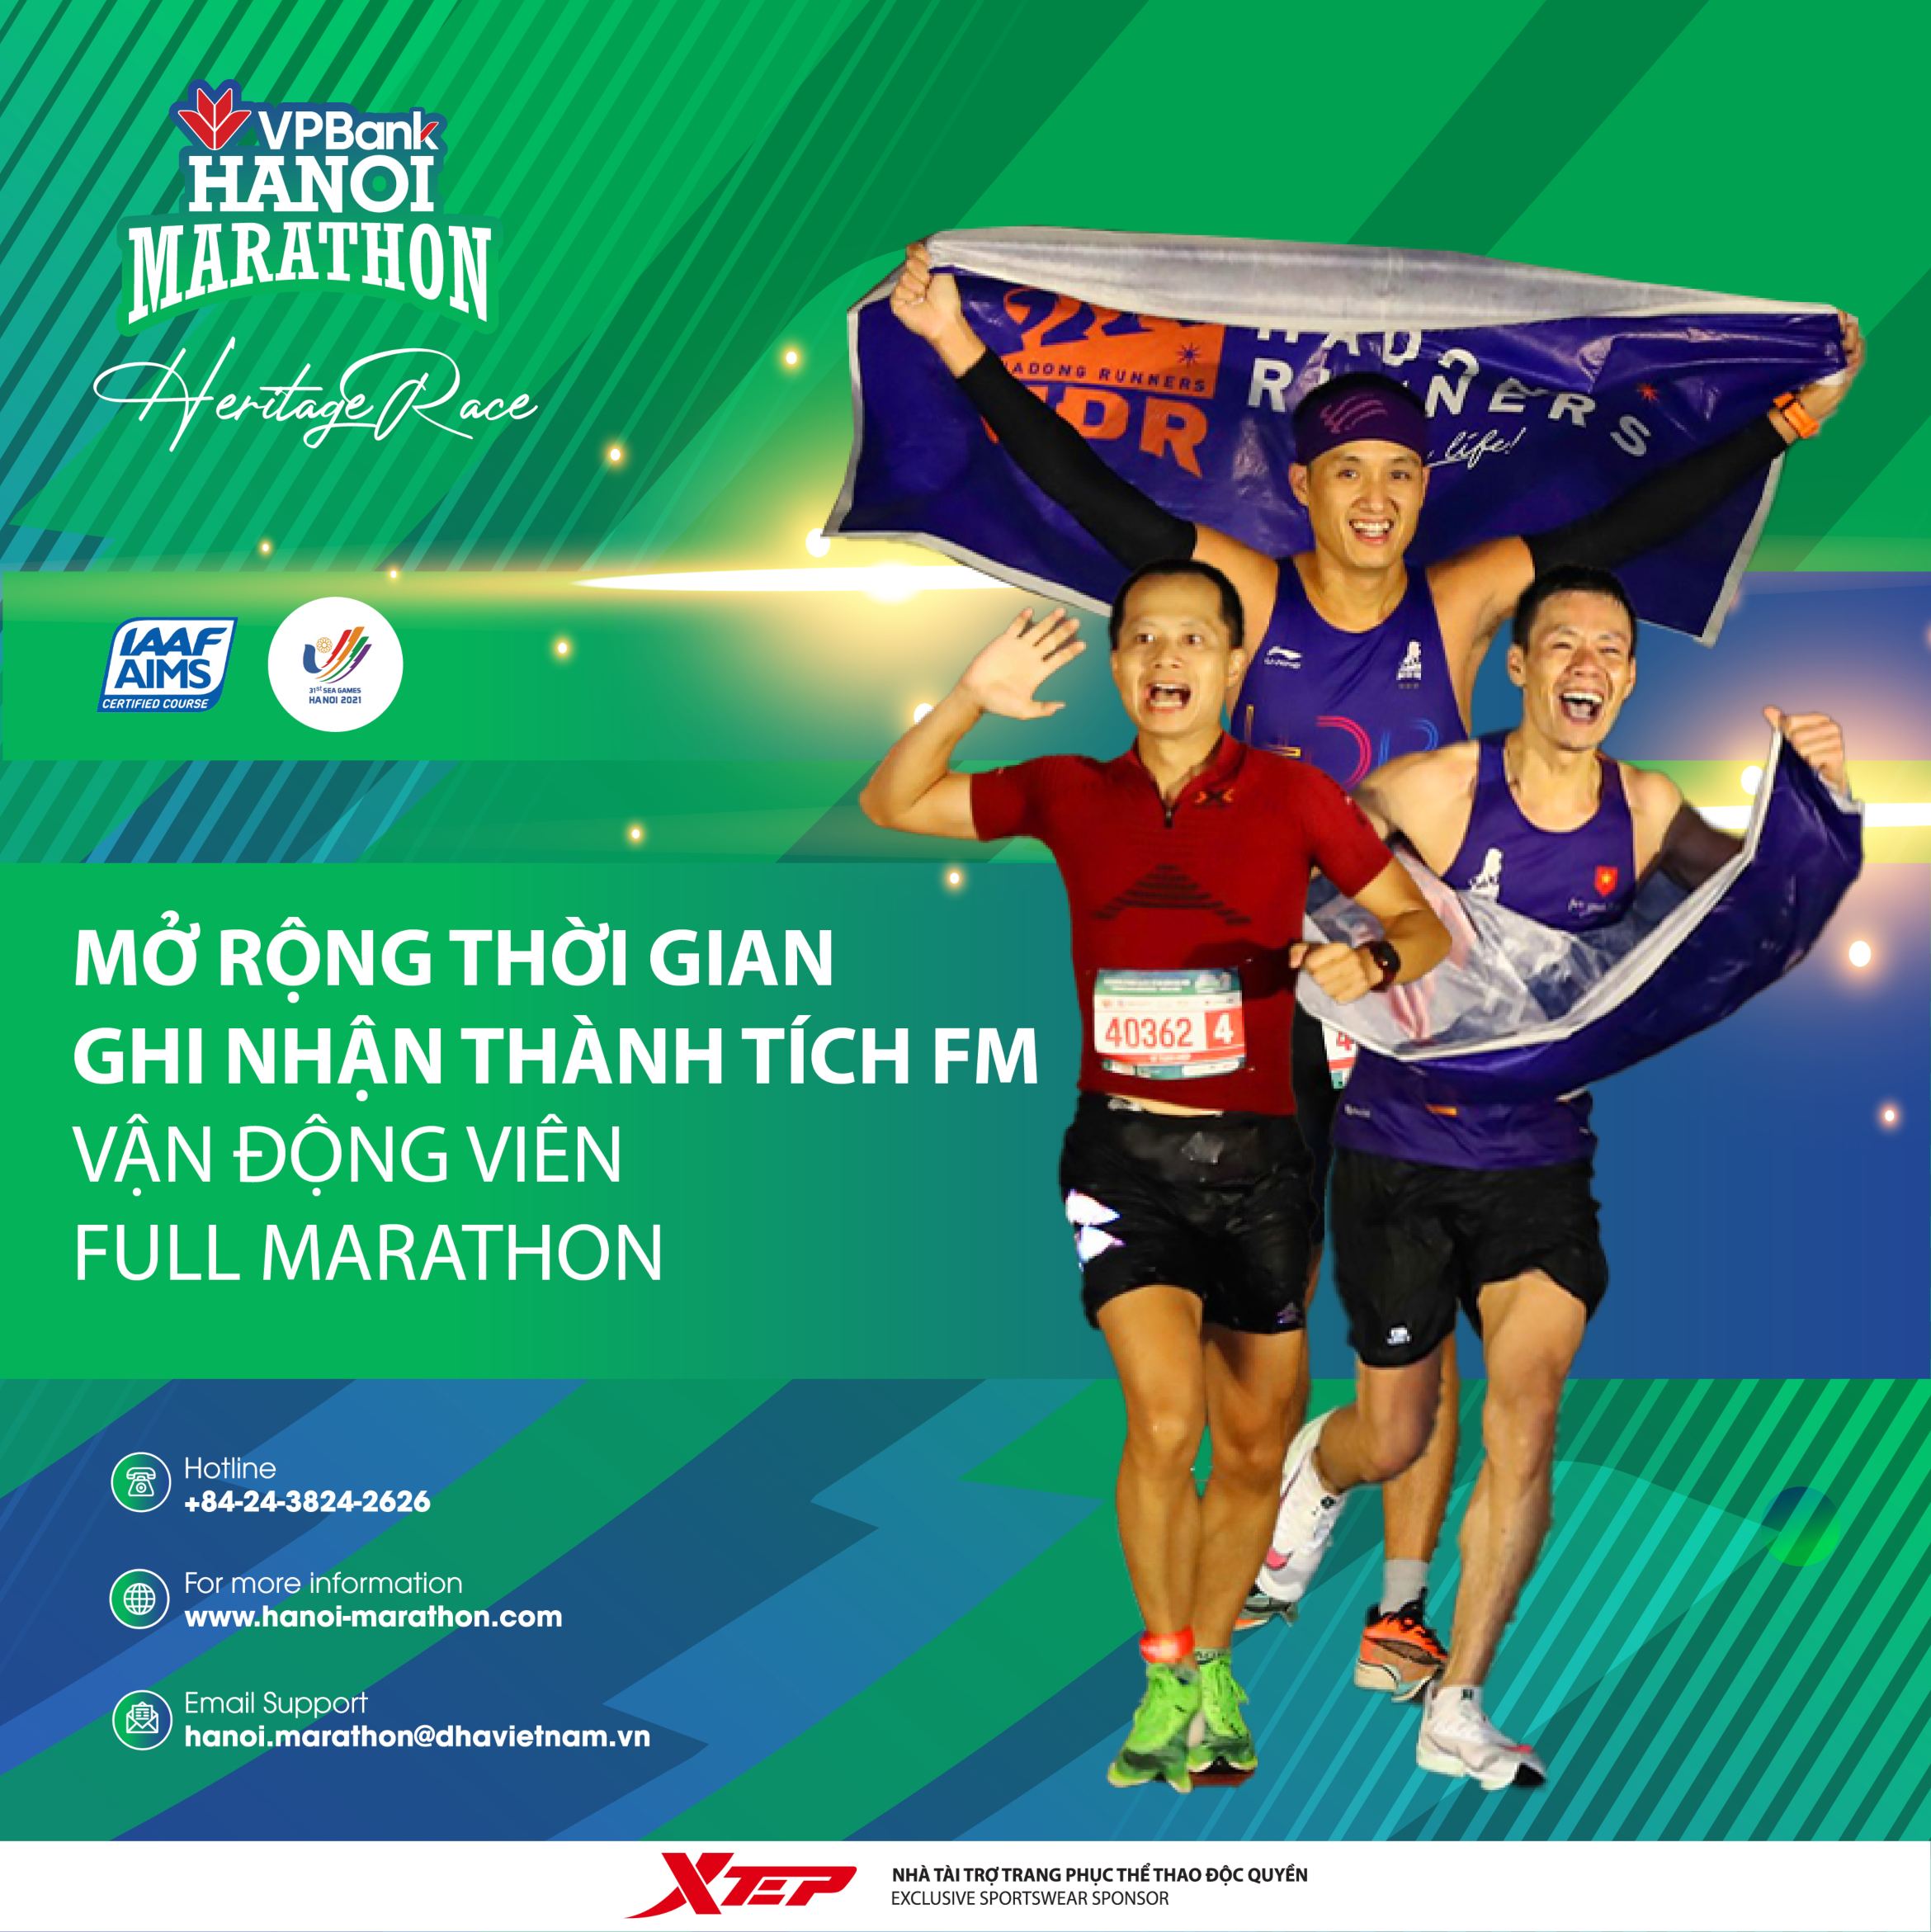 VPBank Hanoi Marathon 2021 Loosens Criteria for FM Runner Selection